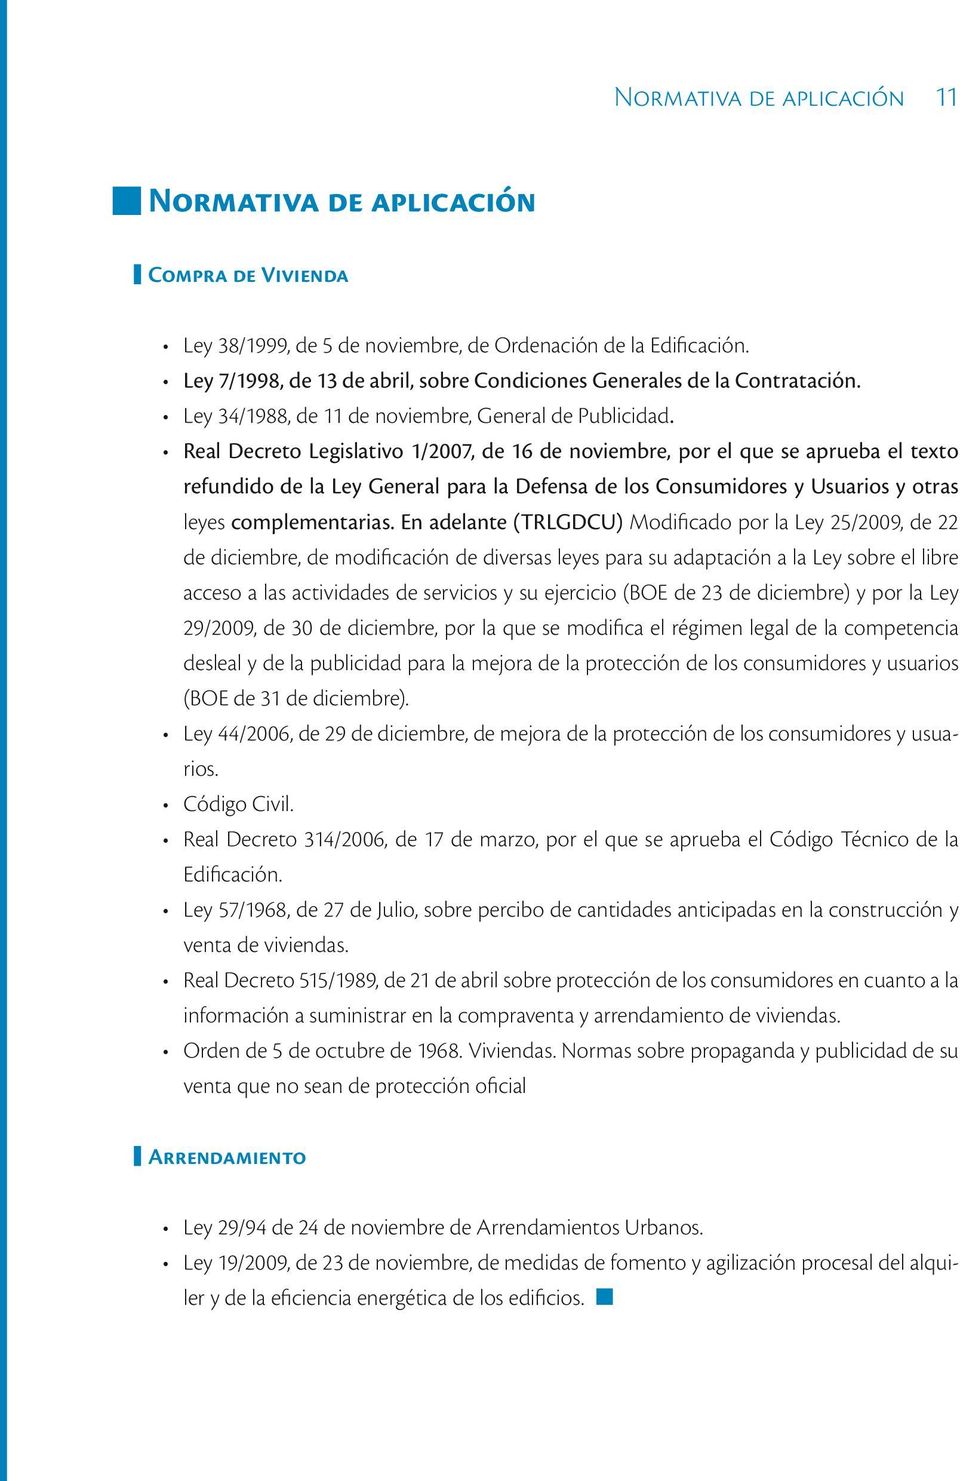 Real Decreto Legislativo 1/2007, de 16 de noviembre, por el que se aprueba el texto refundido de la Ley General para la Defensa de los Consumidores y Usuarios y otras leyes complementarias.